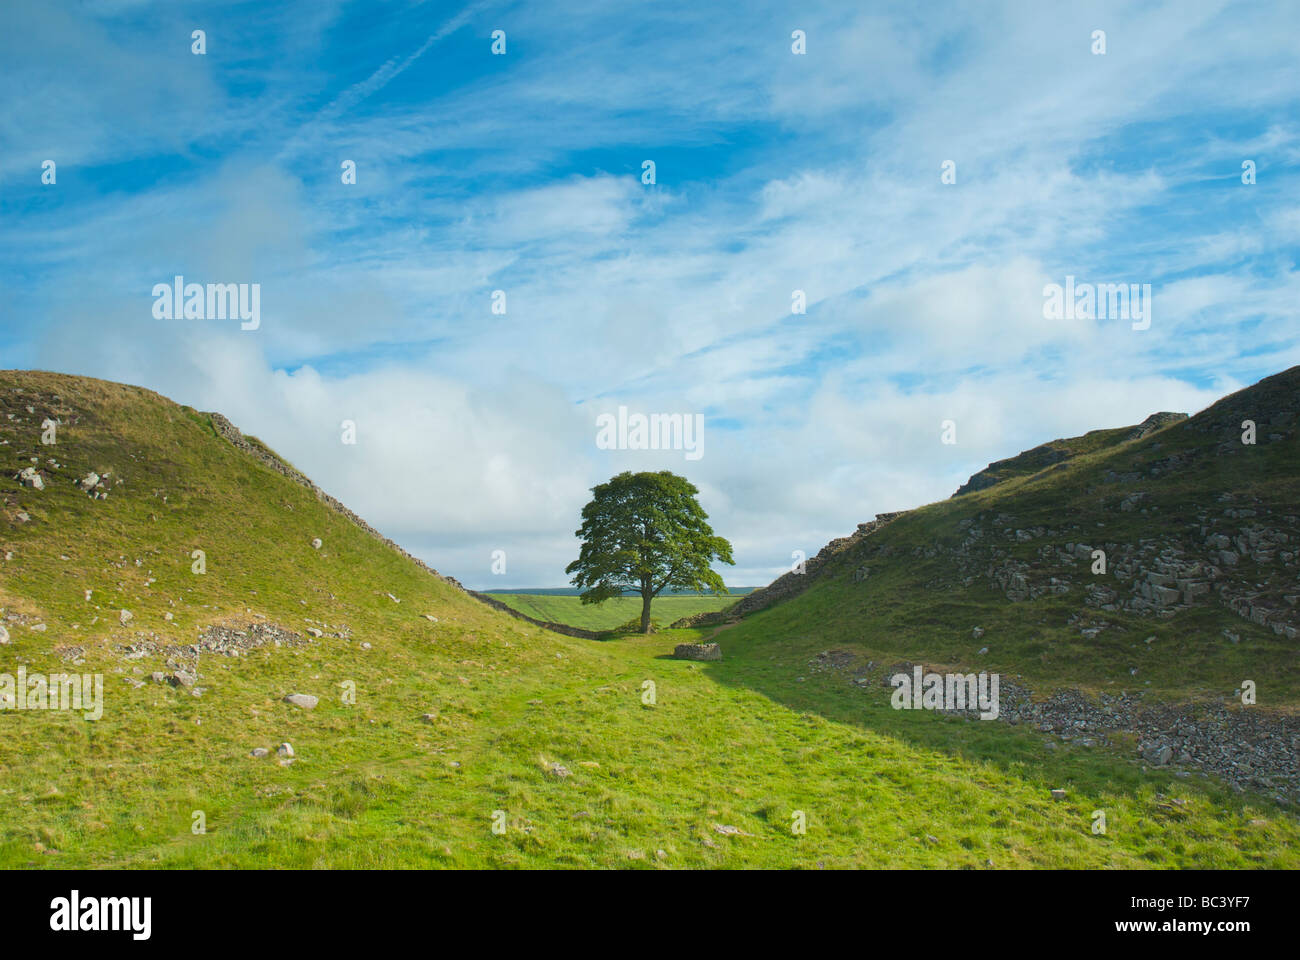 Gap di sicomoro, il vallo di Adriano a Rigg in acciaio, Northumberland, England Regno Unito Foto Stock